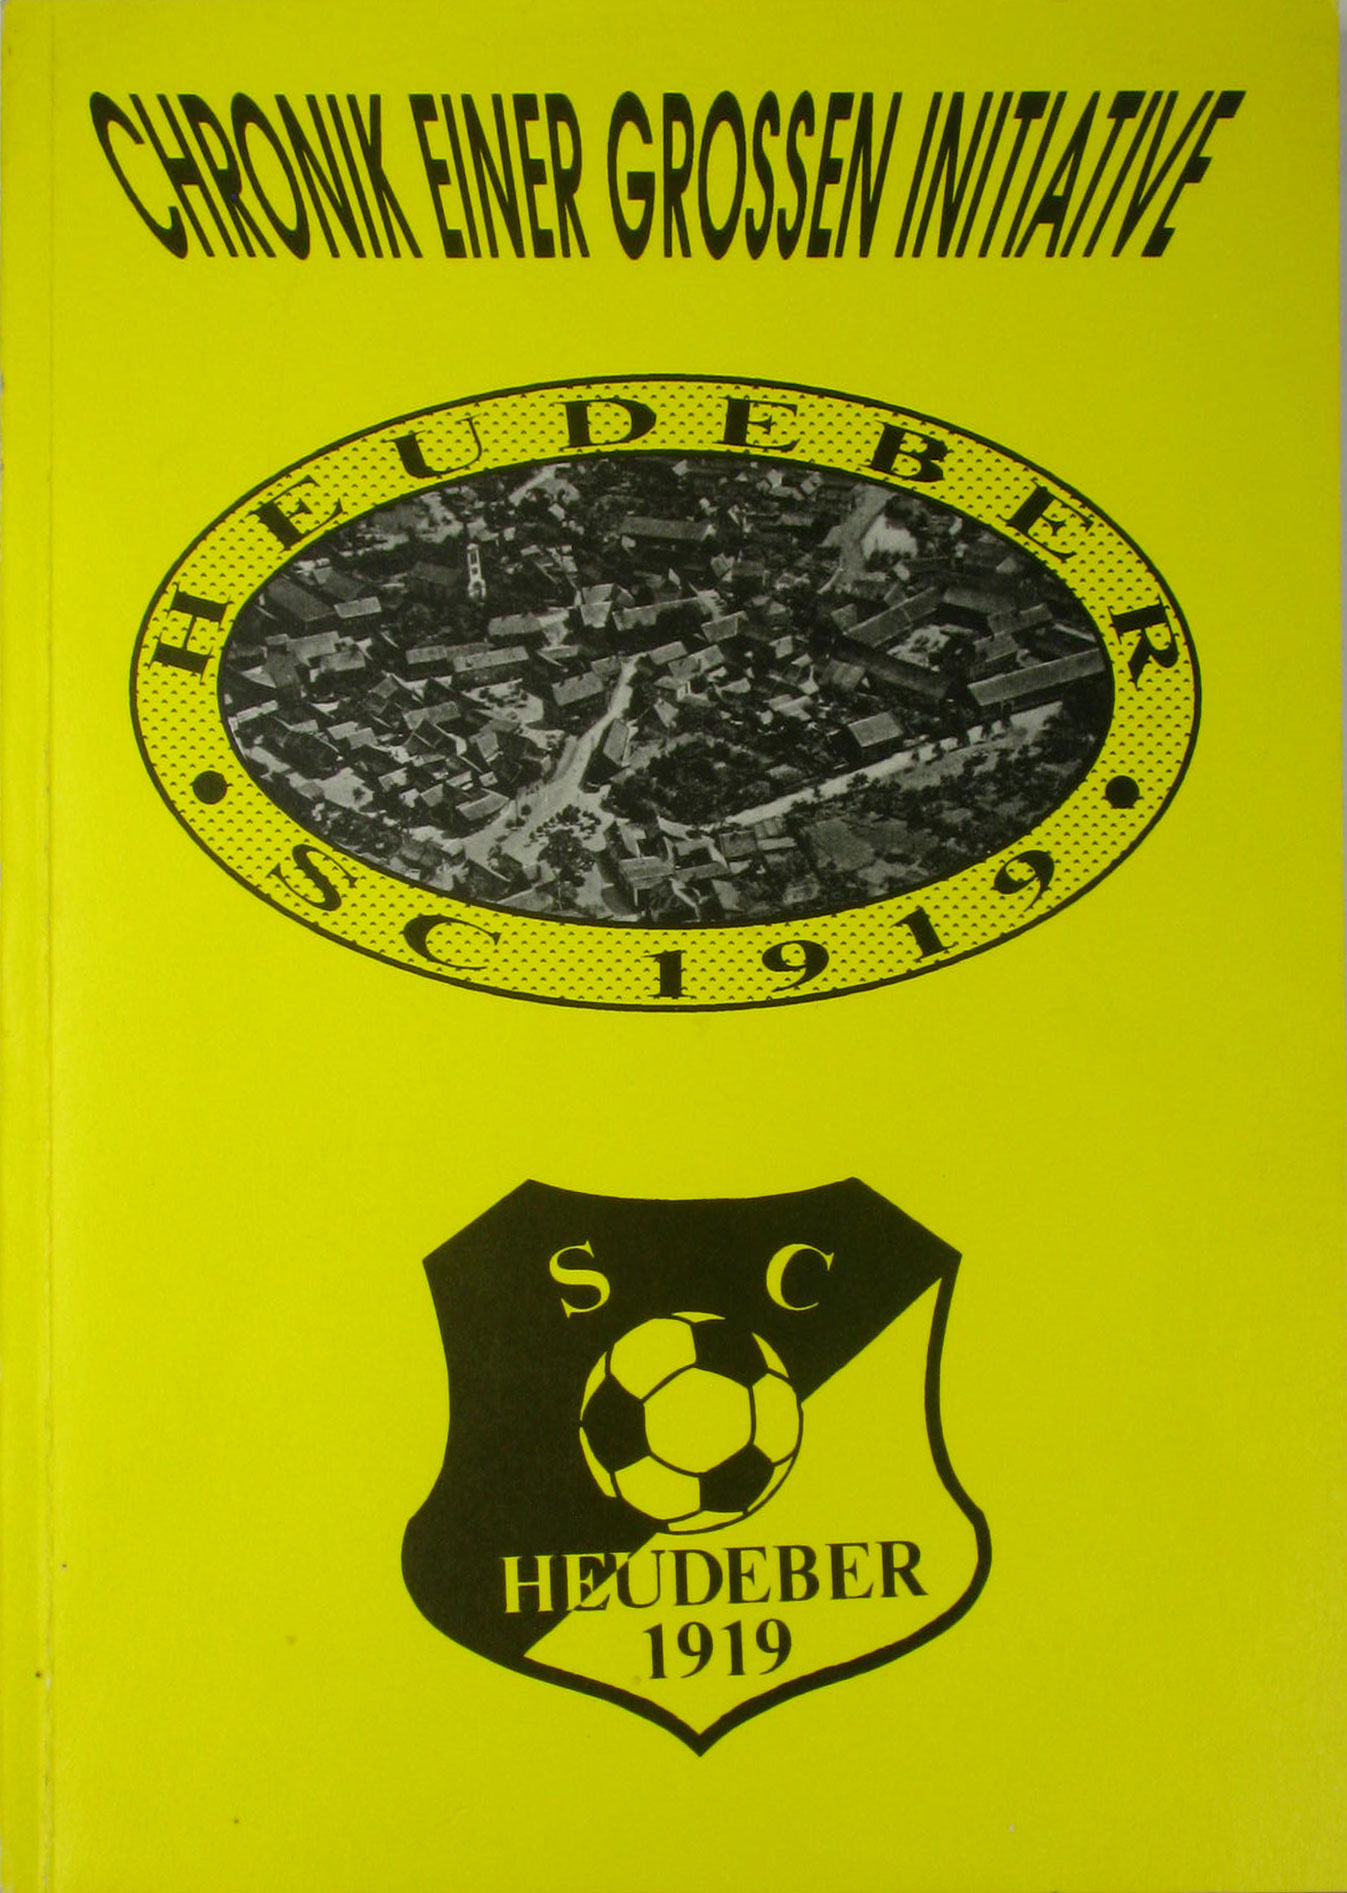 Wiedenbach, Hans-Georg:  Chronik einer großen Initiative. Entwicklung des Sportes in Heudeber. SC 1919 Heudeber. 